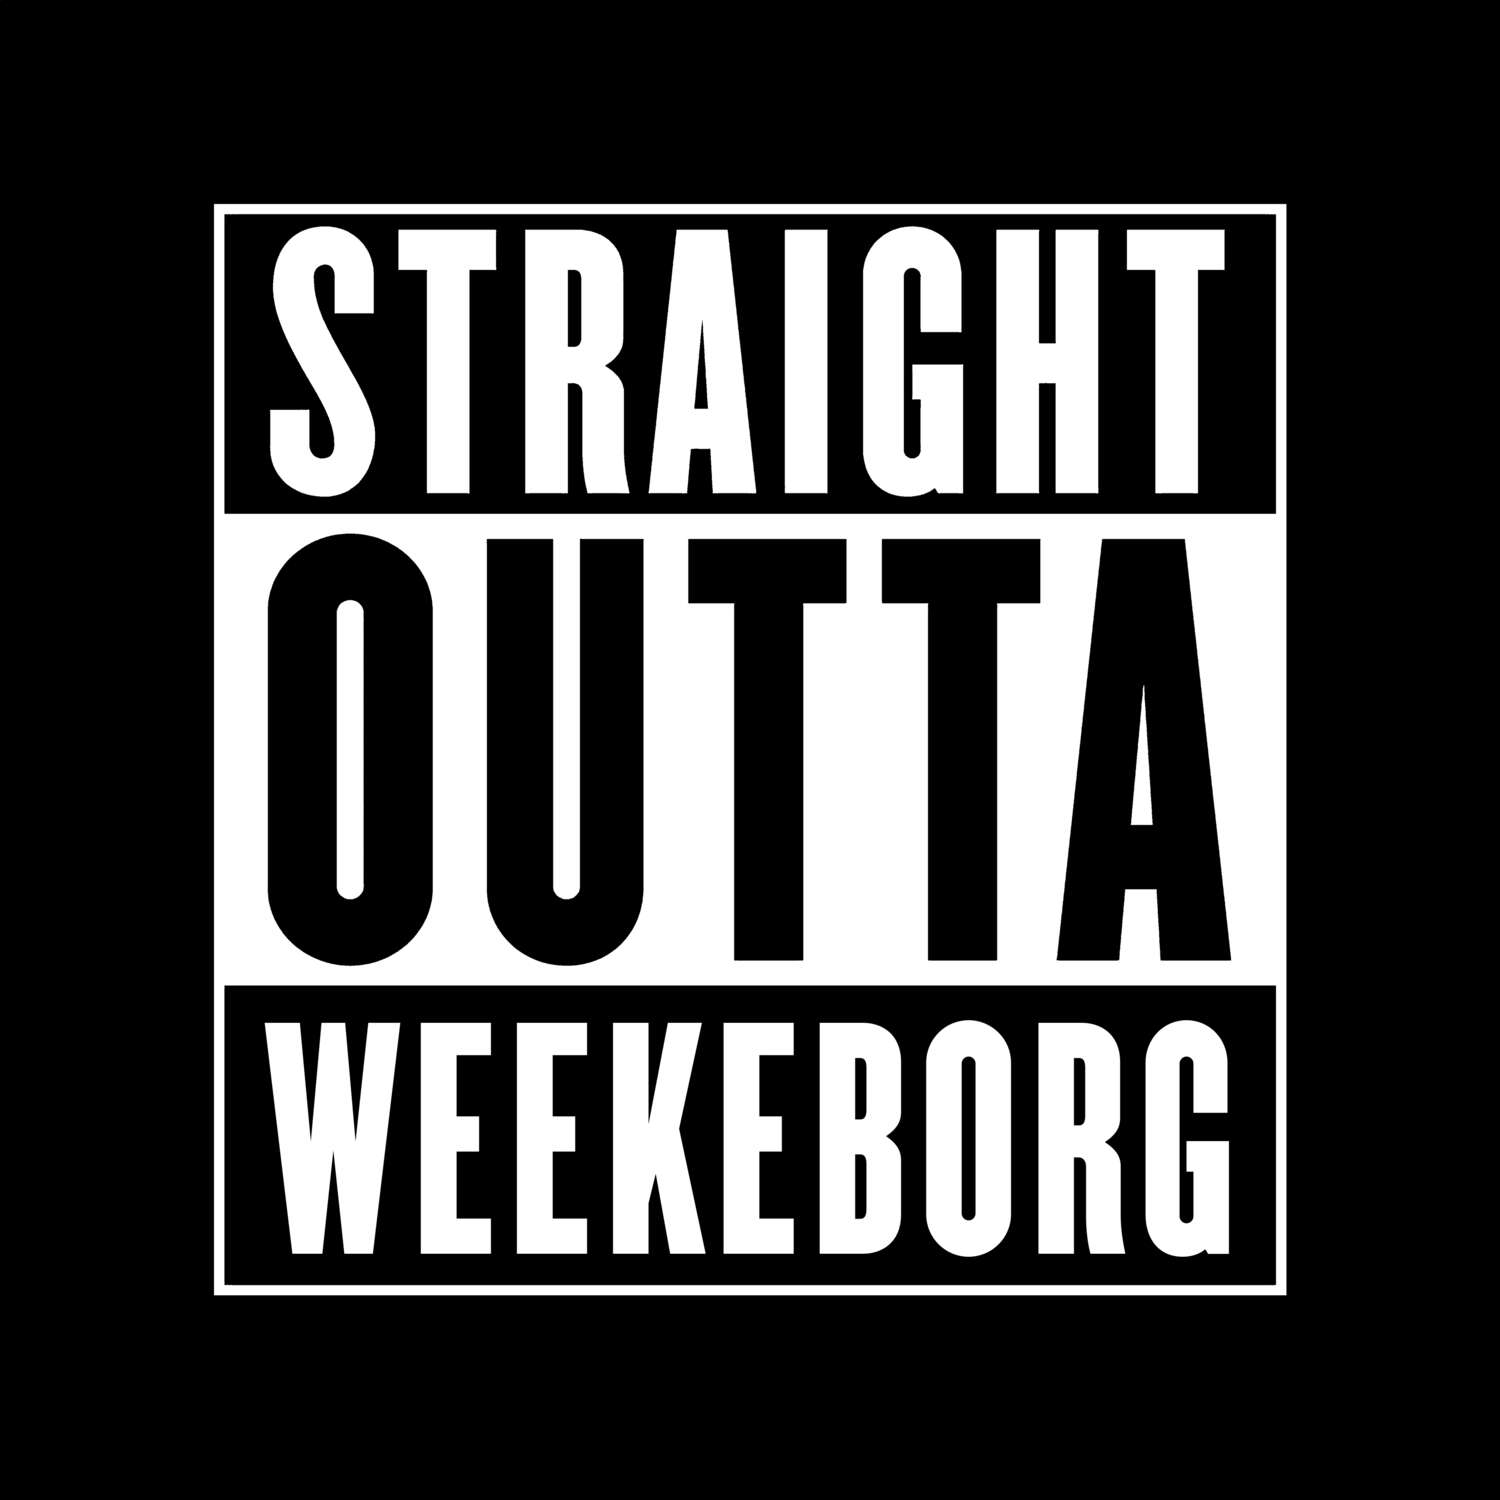 Weekeborg T-Shirt »Straight Outta«